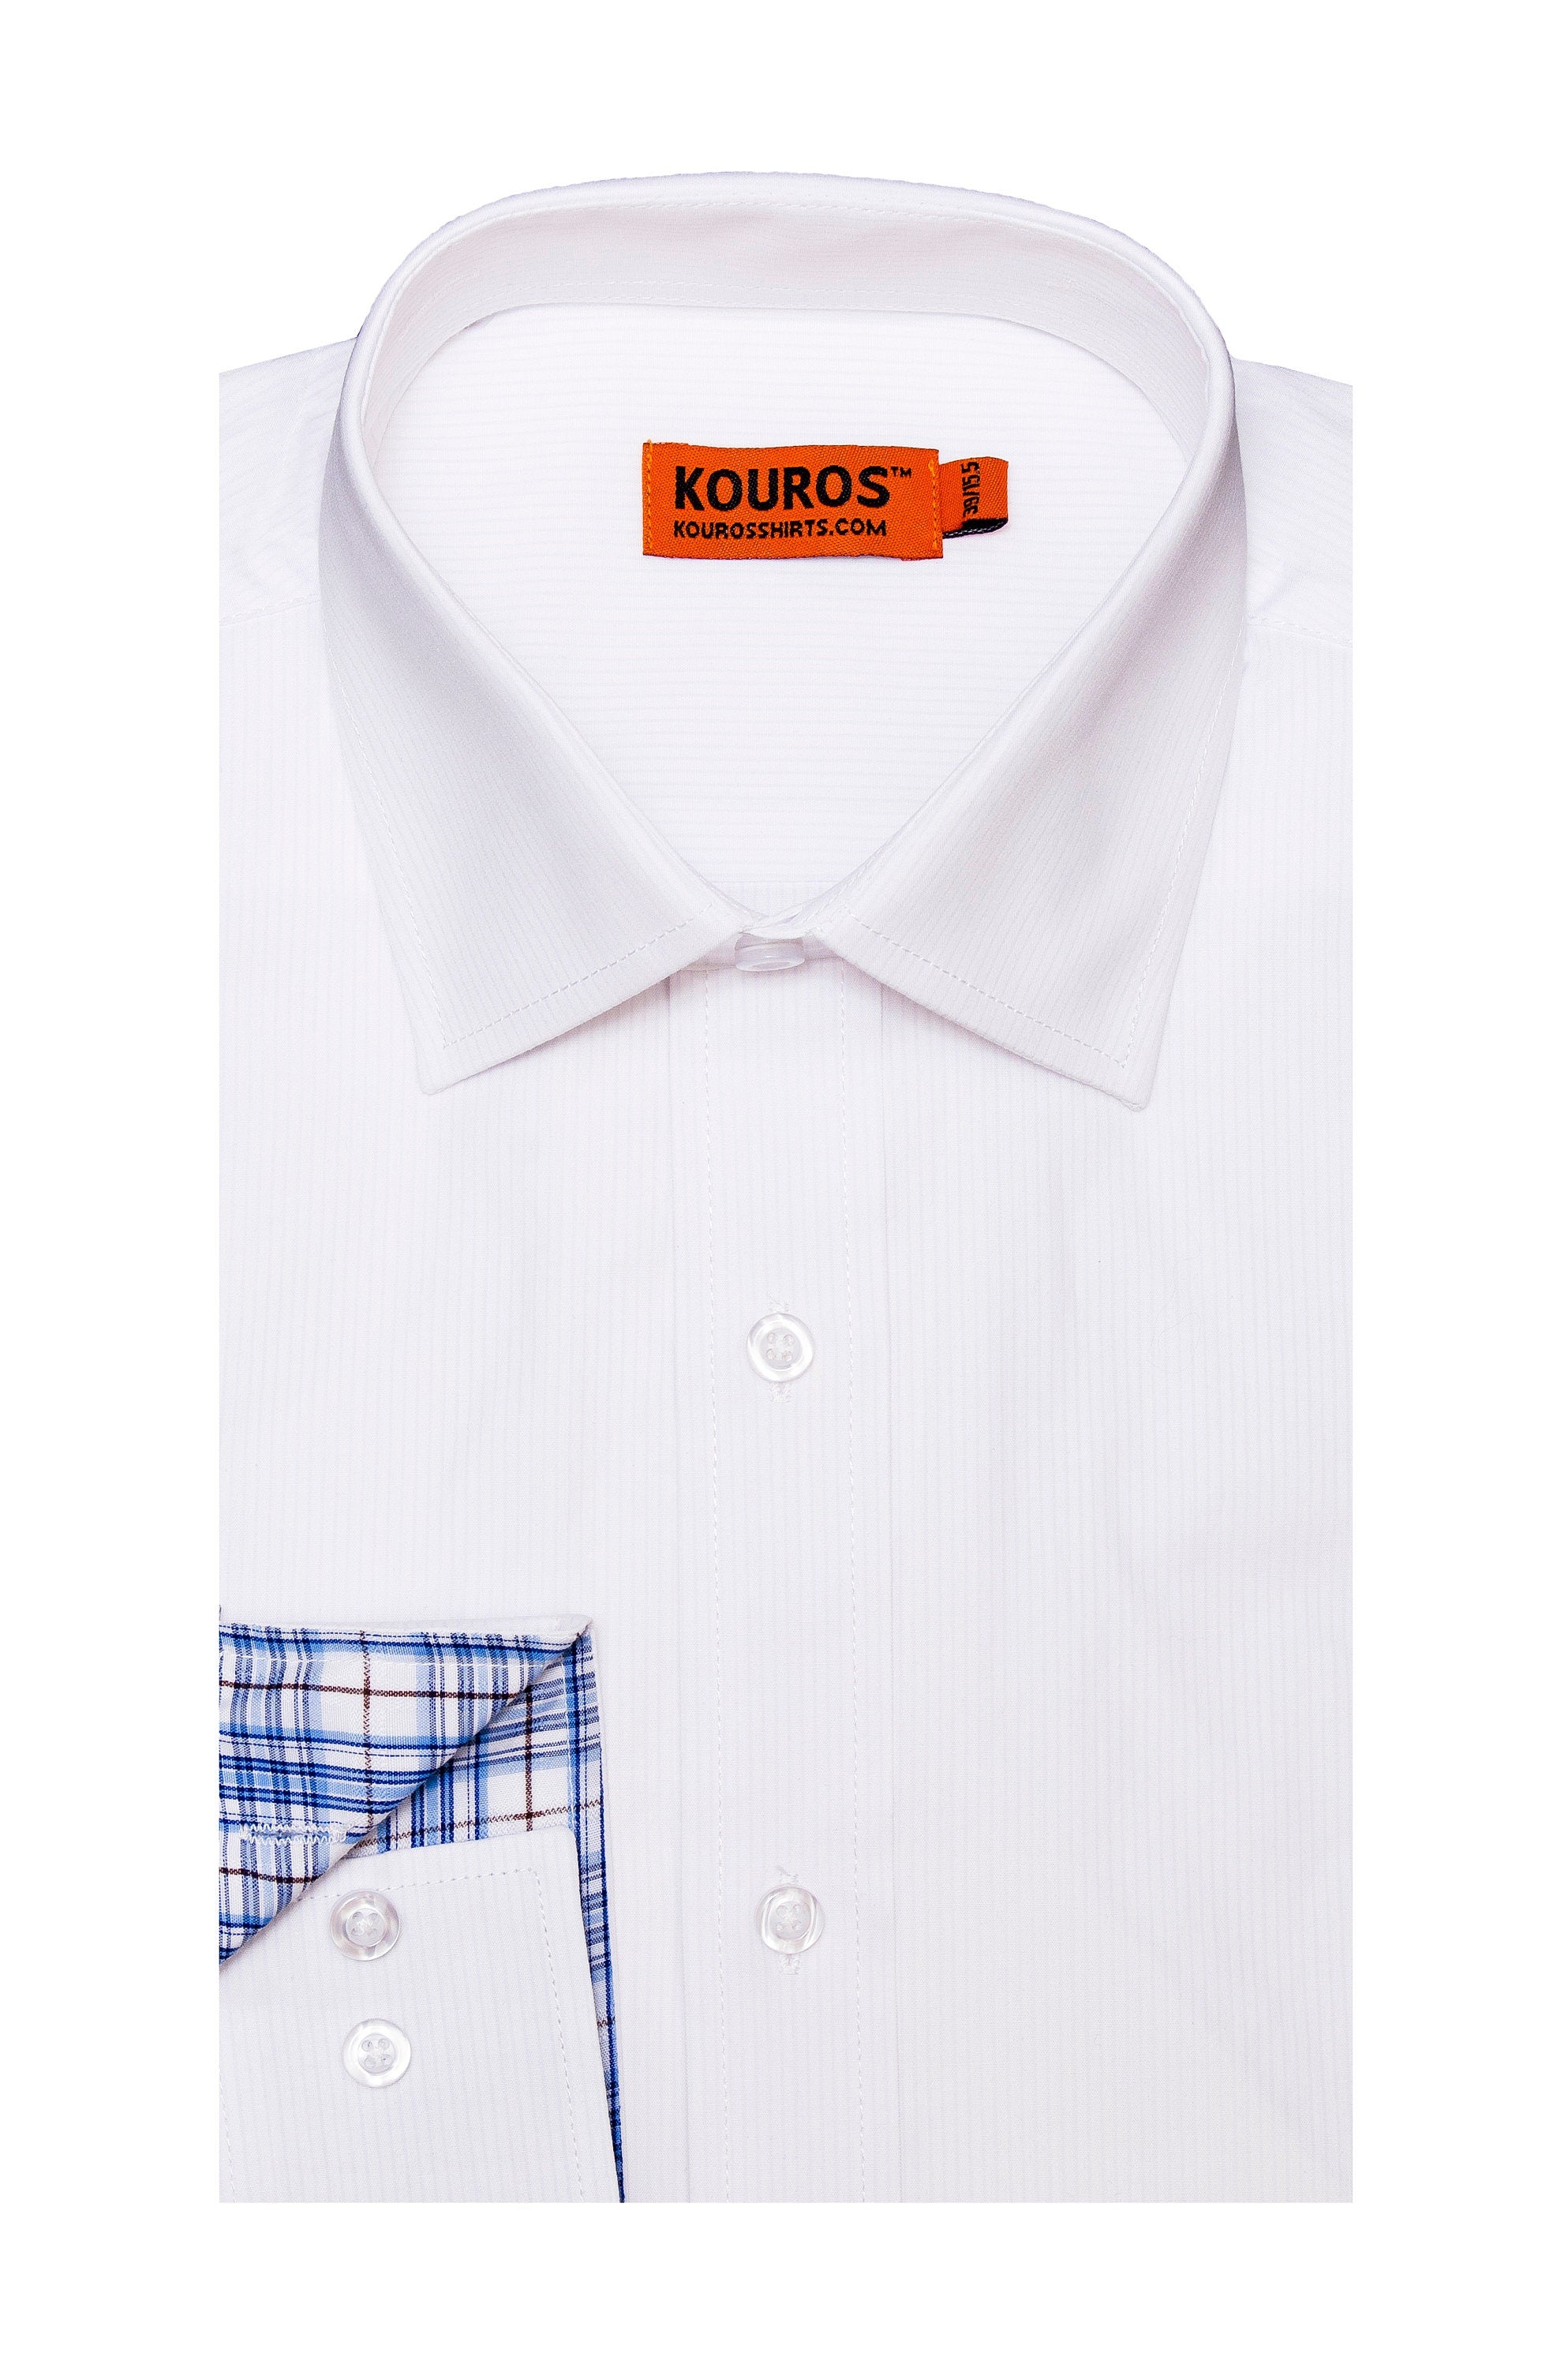 KOVROS Men's Premium Designer Dress Shirt, White | KOVROS